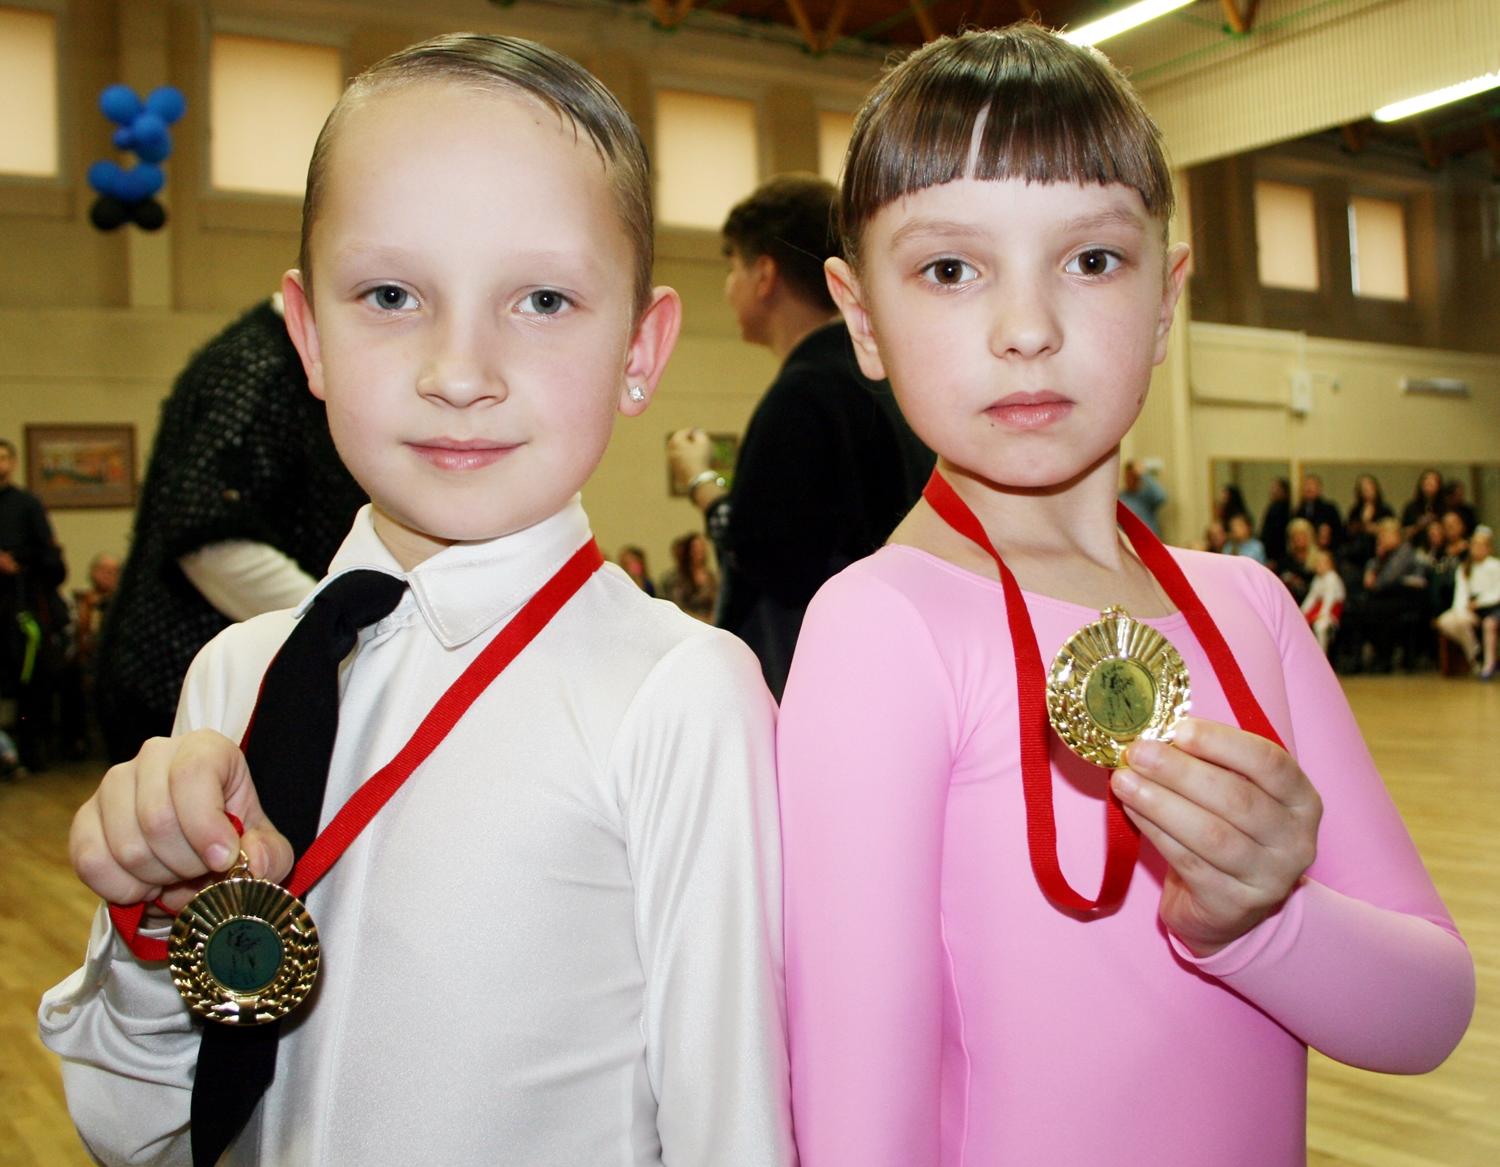 Sėkmingai startavo šokėjai / Nuotr. O. Kazlauskaitė ir E. Valskys.